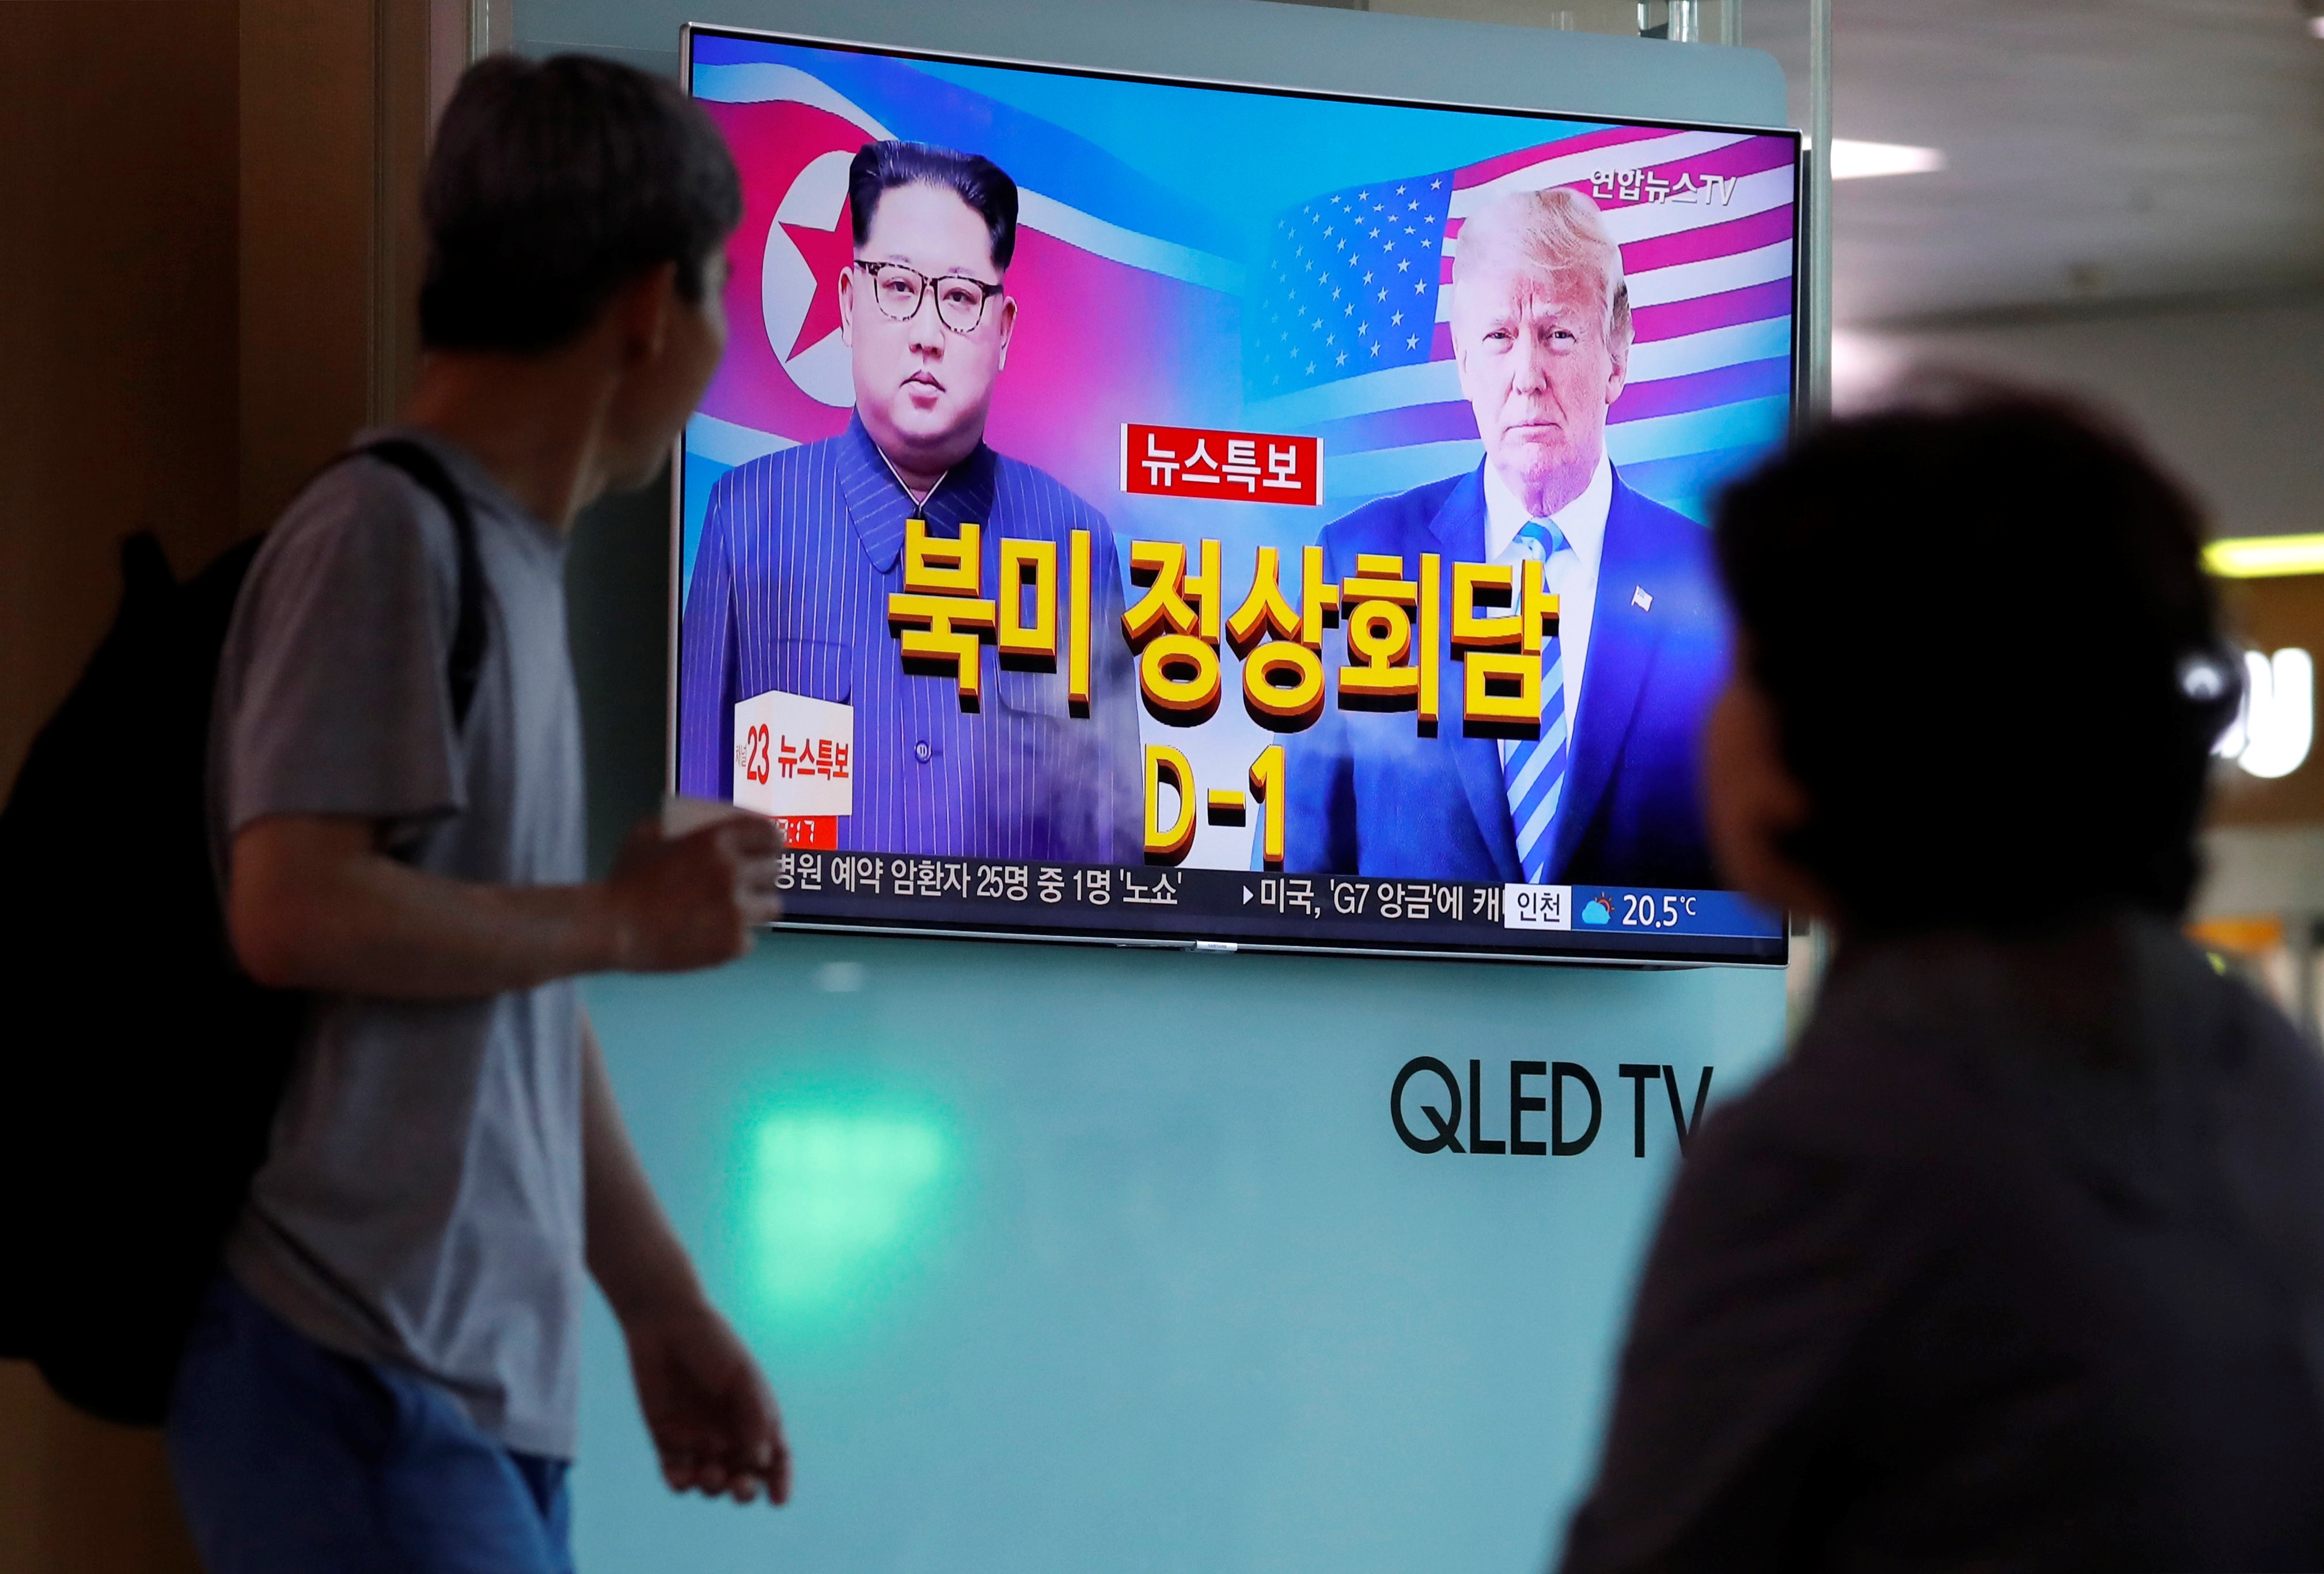 مواطنى كوريا الشمالية يتابعون باهتمام التقارير الإعلامية حول قمة ترامب وكيم